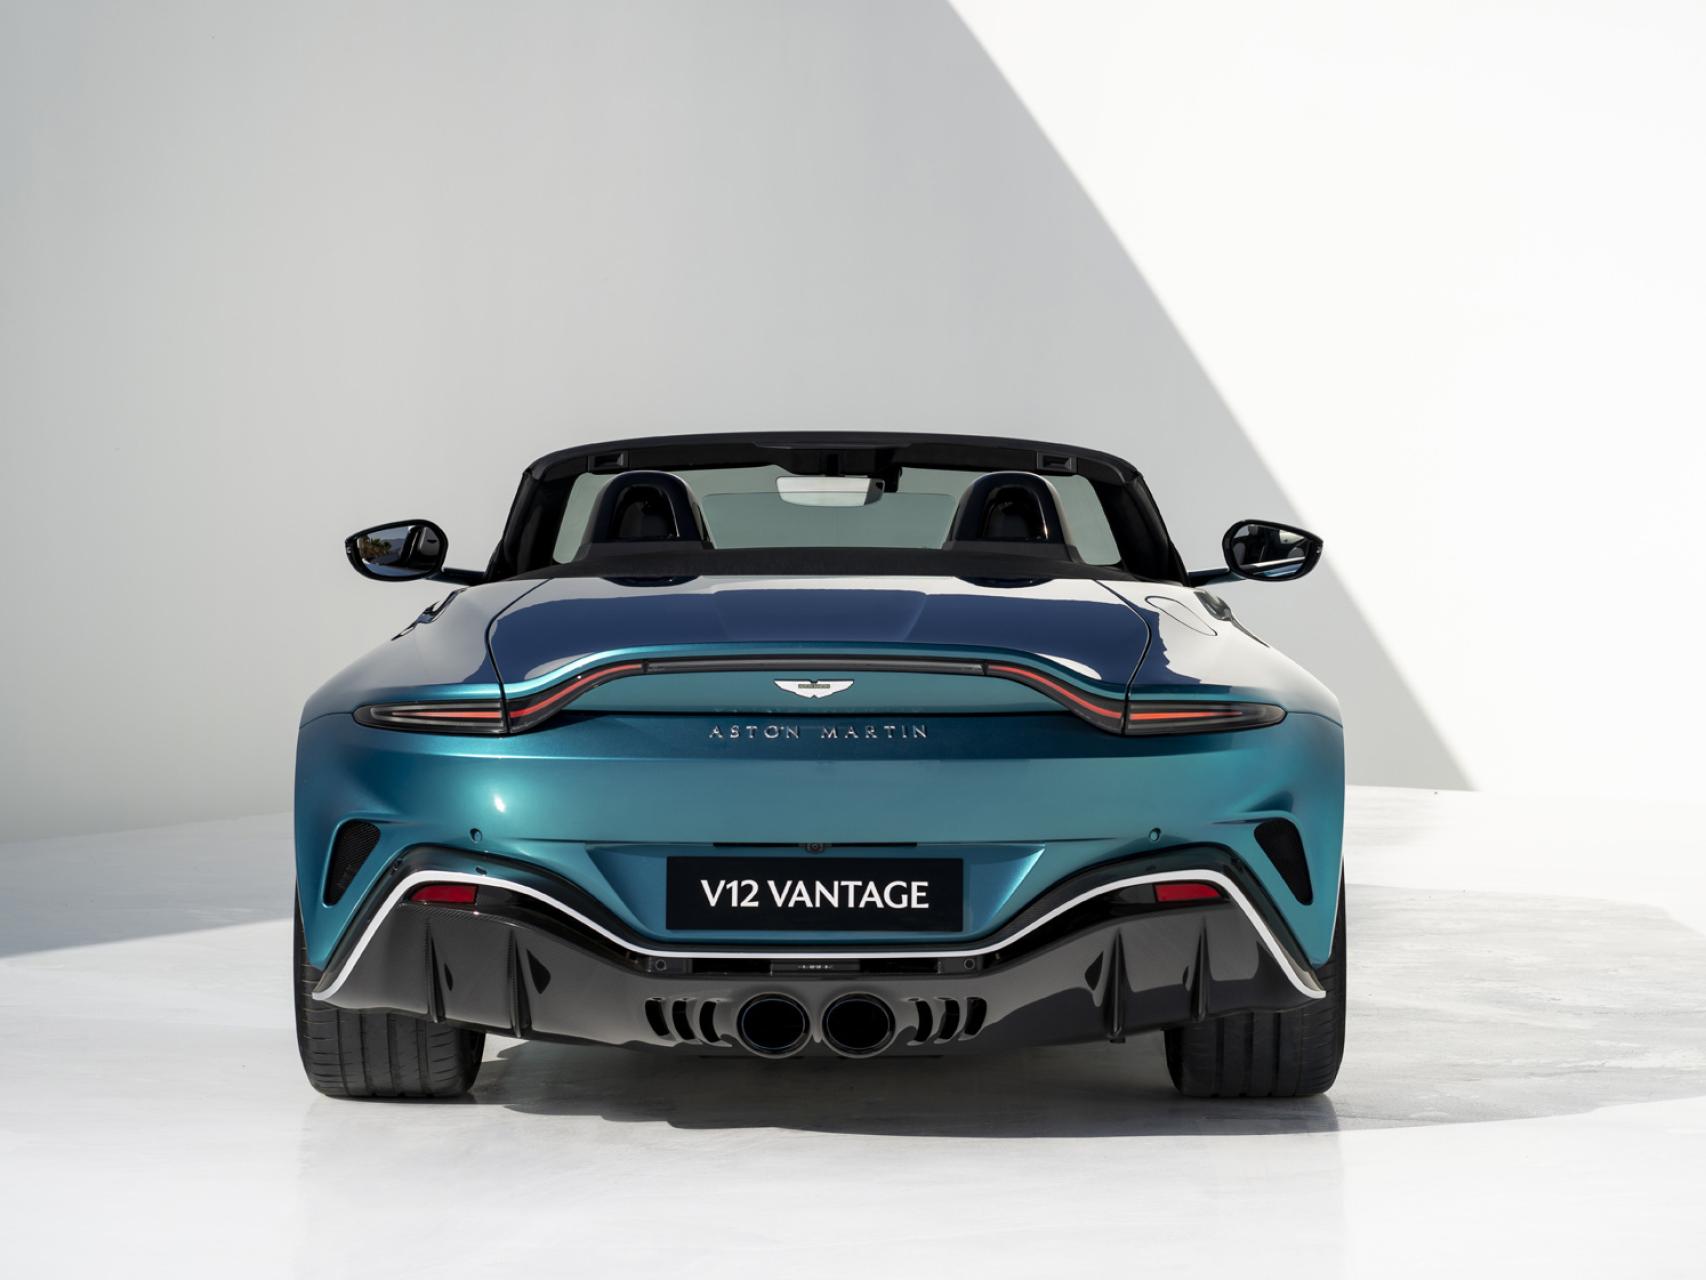 FÓRMULA 1: El lujoso y sorprendente regalo de Aston Martin a Fernando Alonso